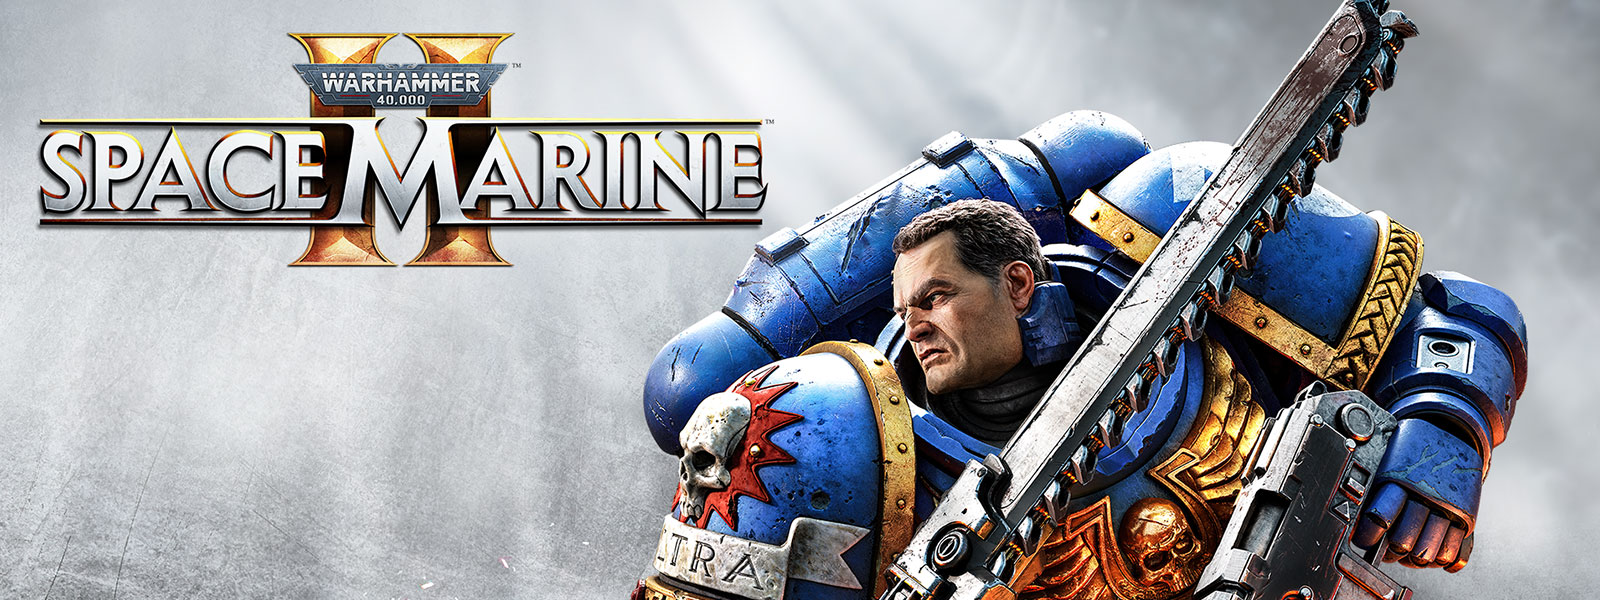 Logo de Warhammer 40,000 Space Marine 2. Un Space Marine en armure bleue tient une tronçonneuse et son arme.